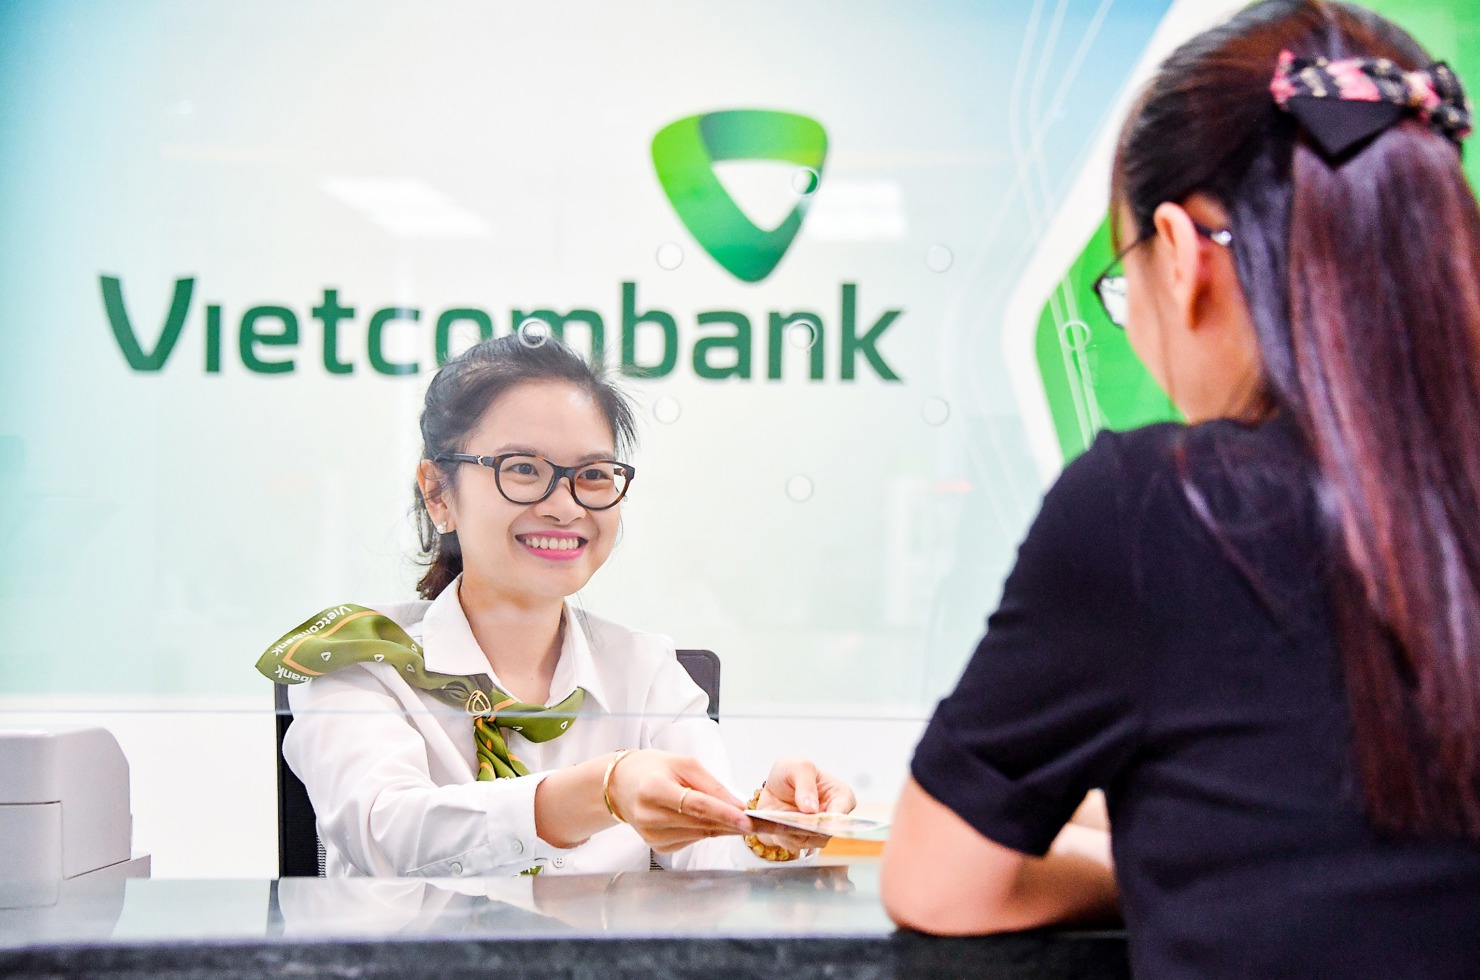 Năm 2020, Vietcombank xác định phương châm hành động “Chuyển đổi - An toàn - Hiệu quả - Bền vững”.